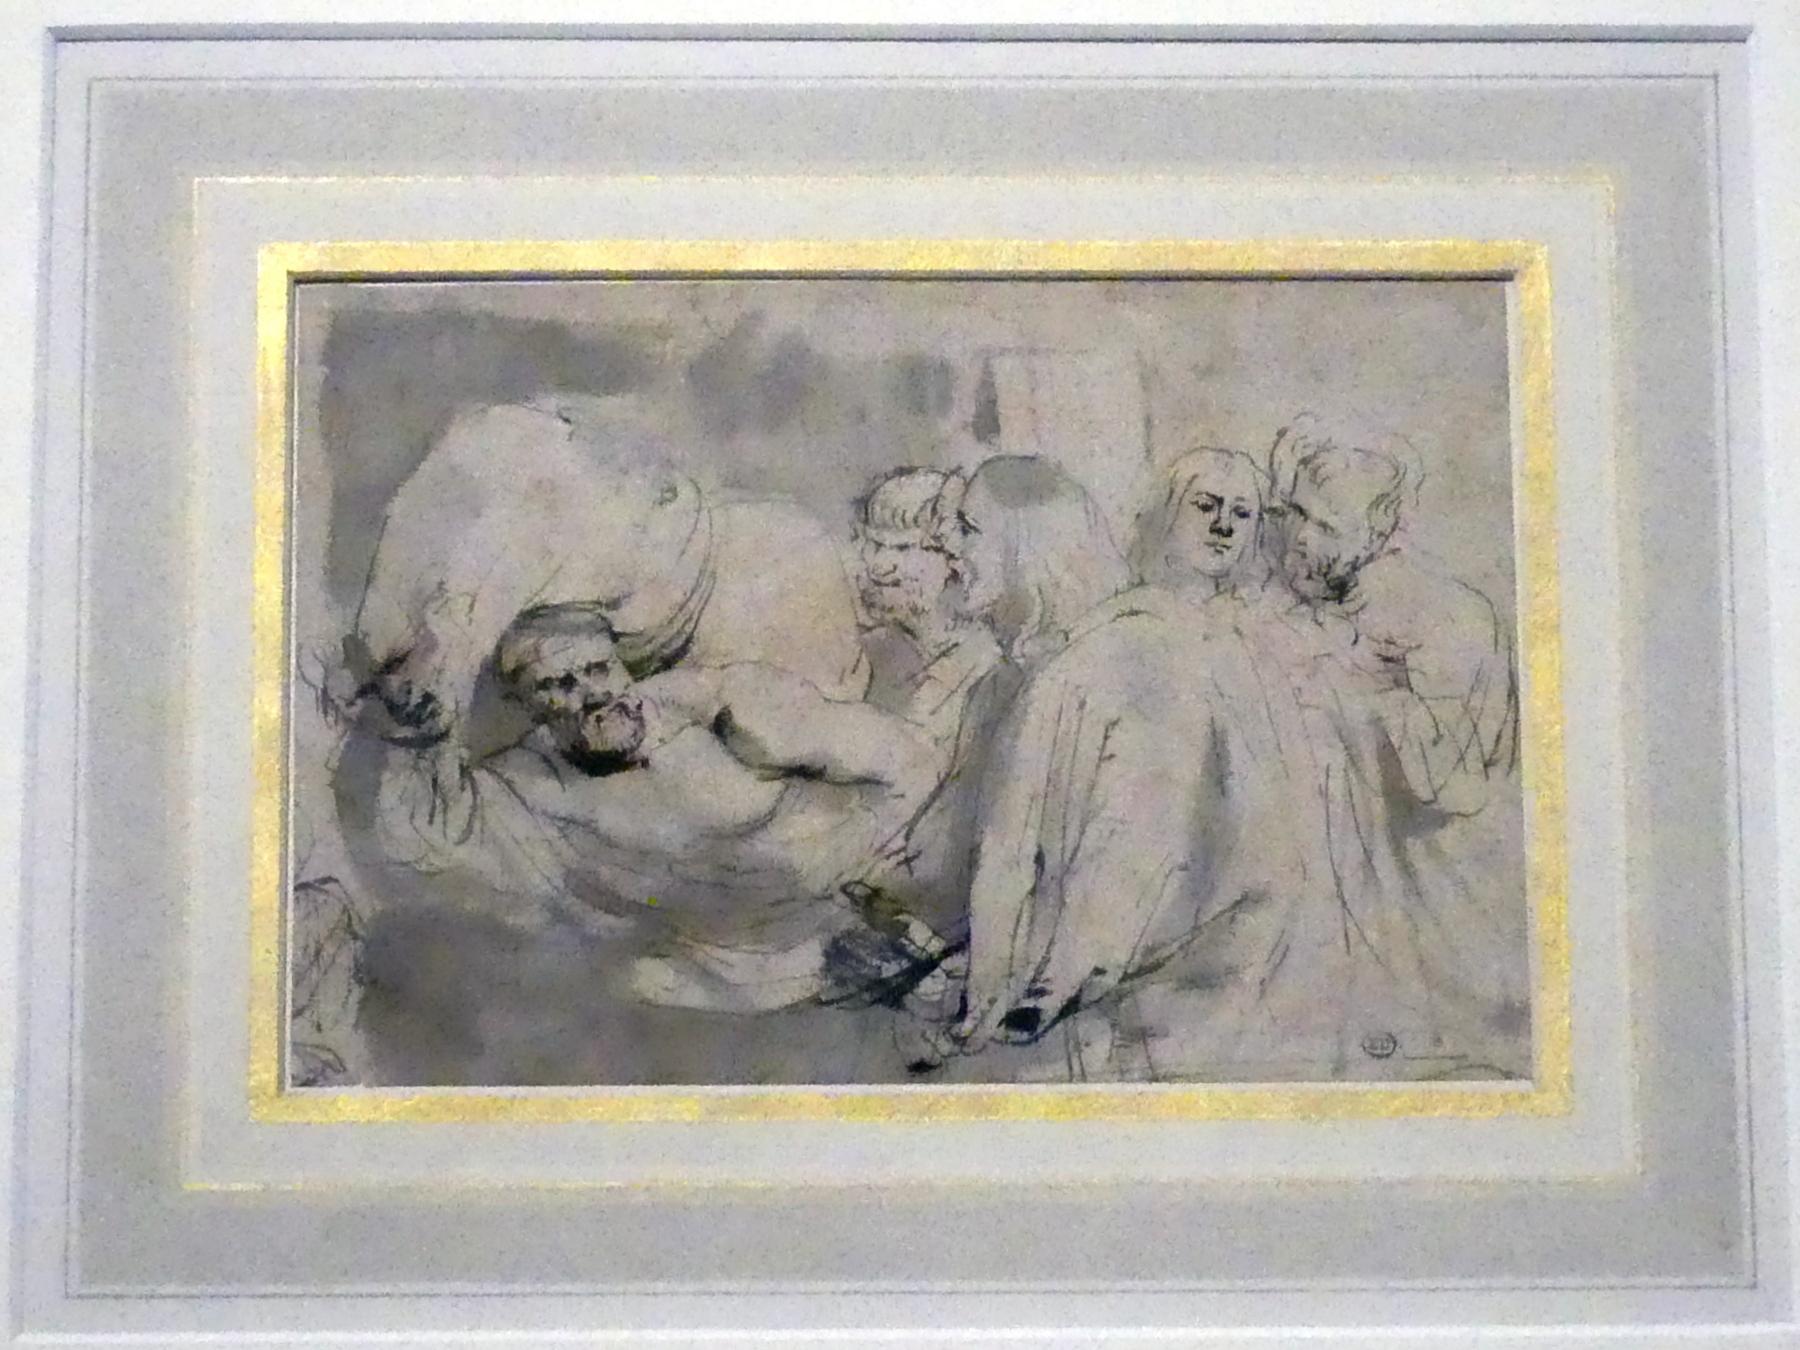 Anthonis (Anton) van Dyck (1614–1641), Die Heilung des Lahmen, München, Alte Pinakothek, Ausstellung "Van Dyck" vom 25.10.2019-02.02.2020, Die Anfänge - 3, um 1618–1620, Bild 1/3